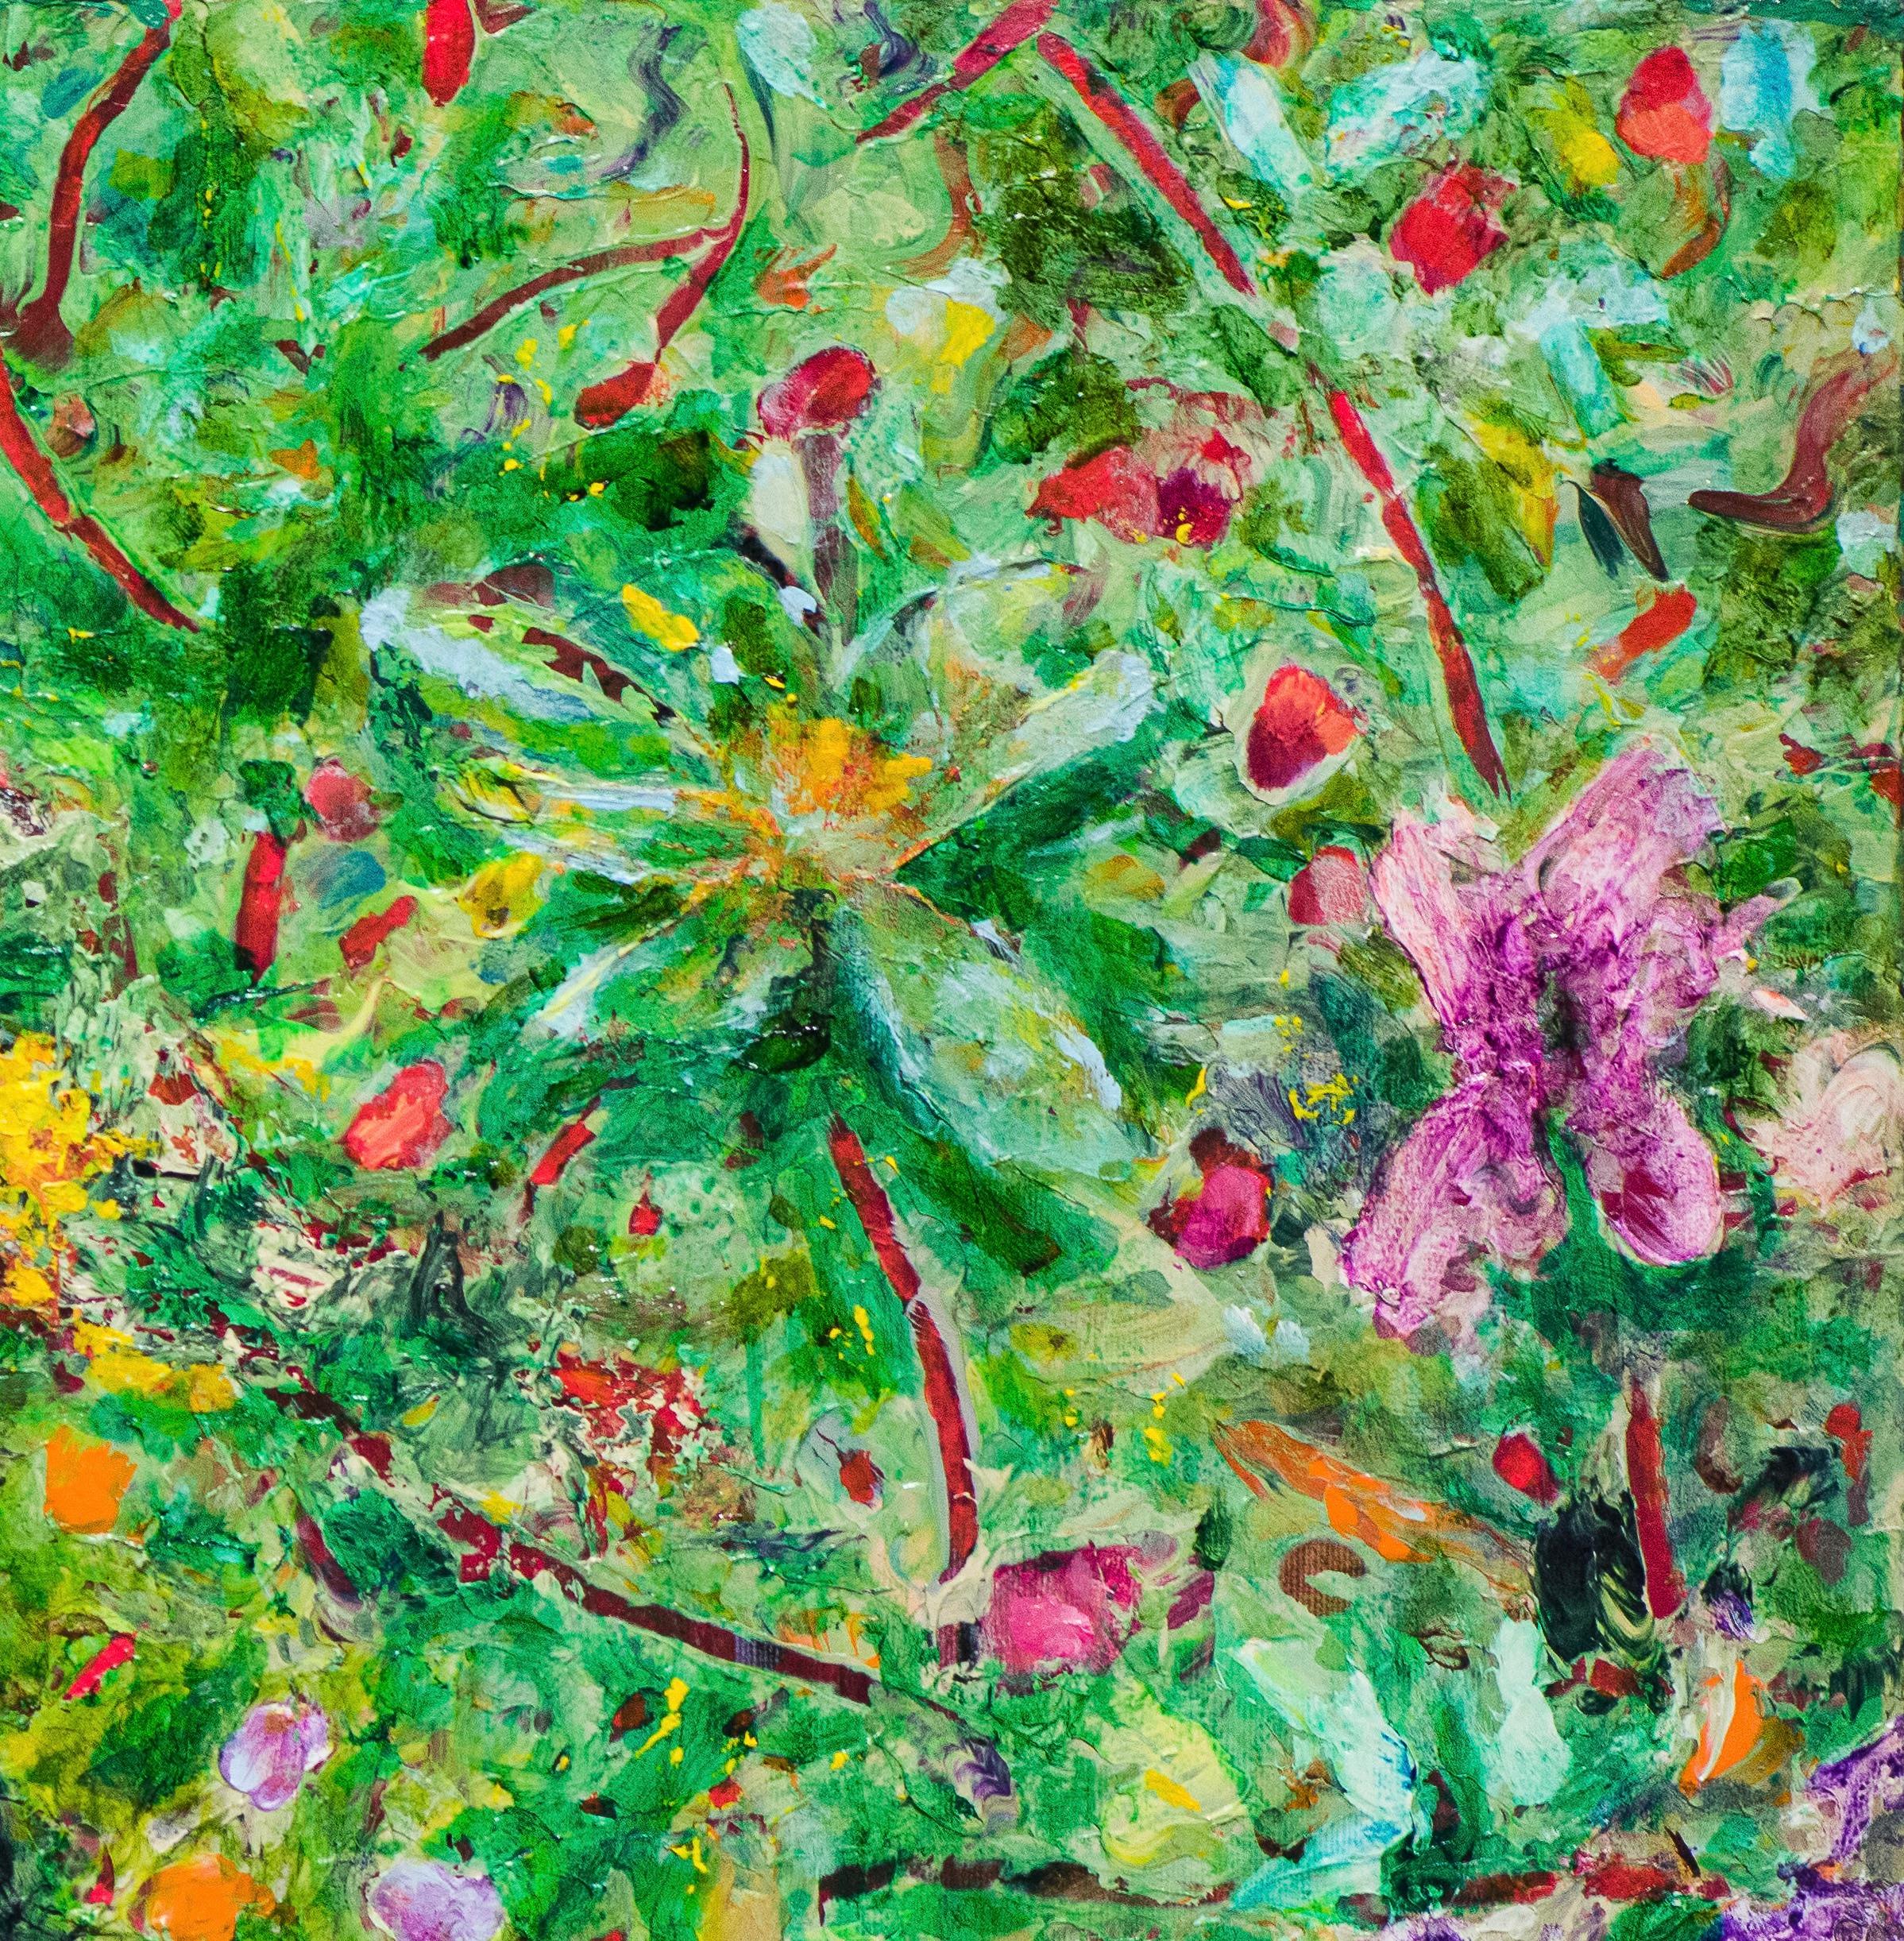 Jim Waid erschafft abstrakte Welten, die mit Farben gesättigt, mit Zeichen überlagert, mit Rhythmus und Bewegung gefüllt und kompliziert strukturiert sind. Seine Leinwände enthalten kaum die darauf gemalte Landschaft sondern laden den Betrachter